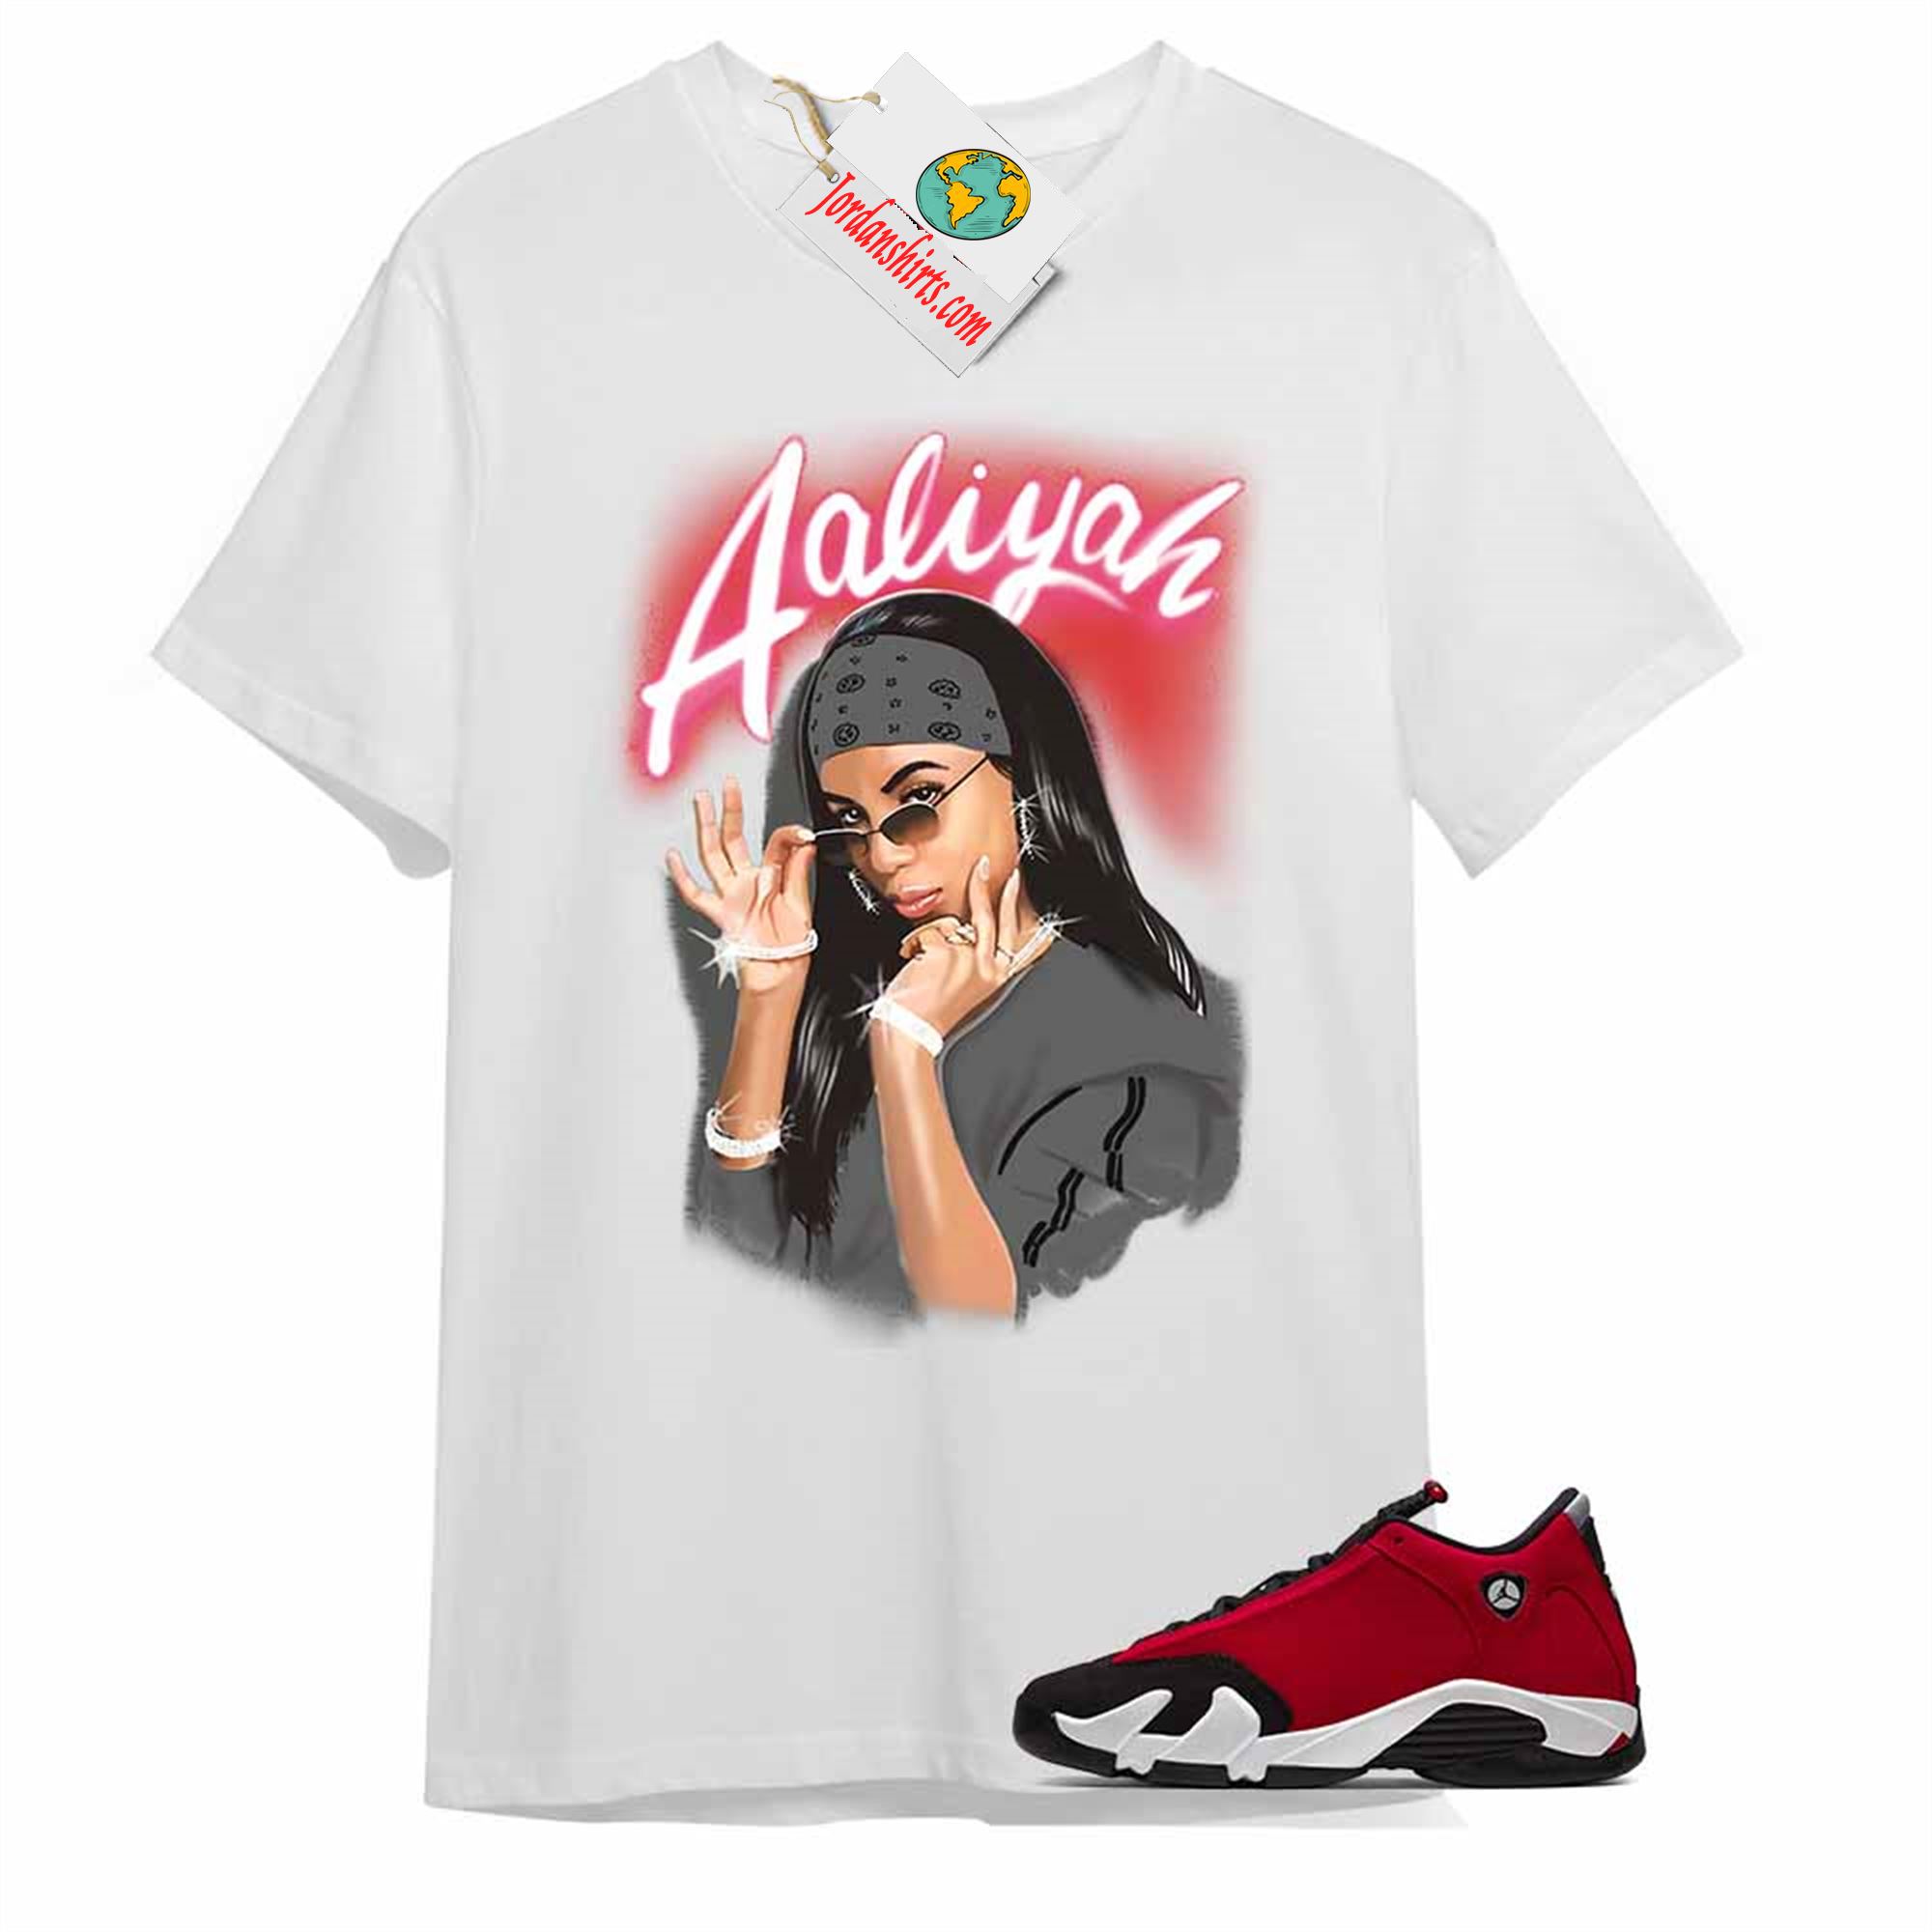 Jordan 14 Shirt, Aaliyah Airbrush White T-shirt Air Jordan 14 Gym Red 14s Size Up To 5xl